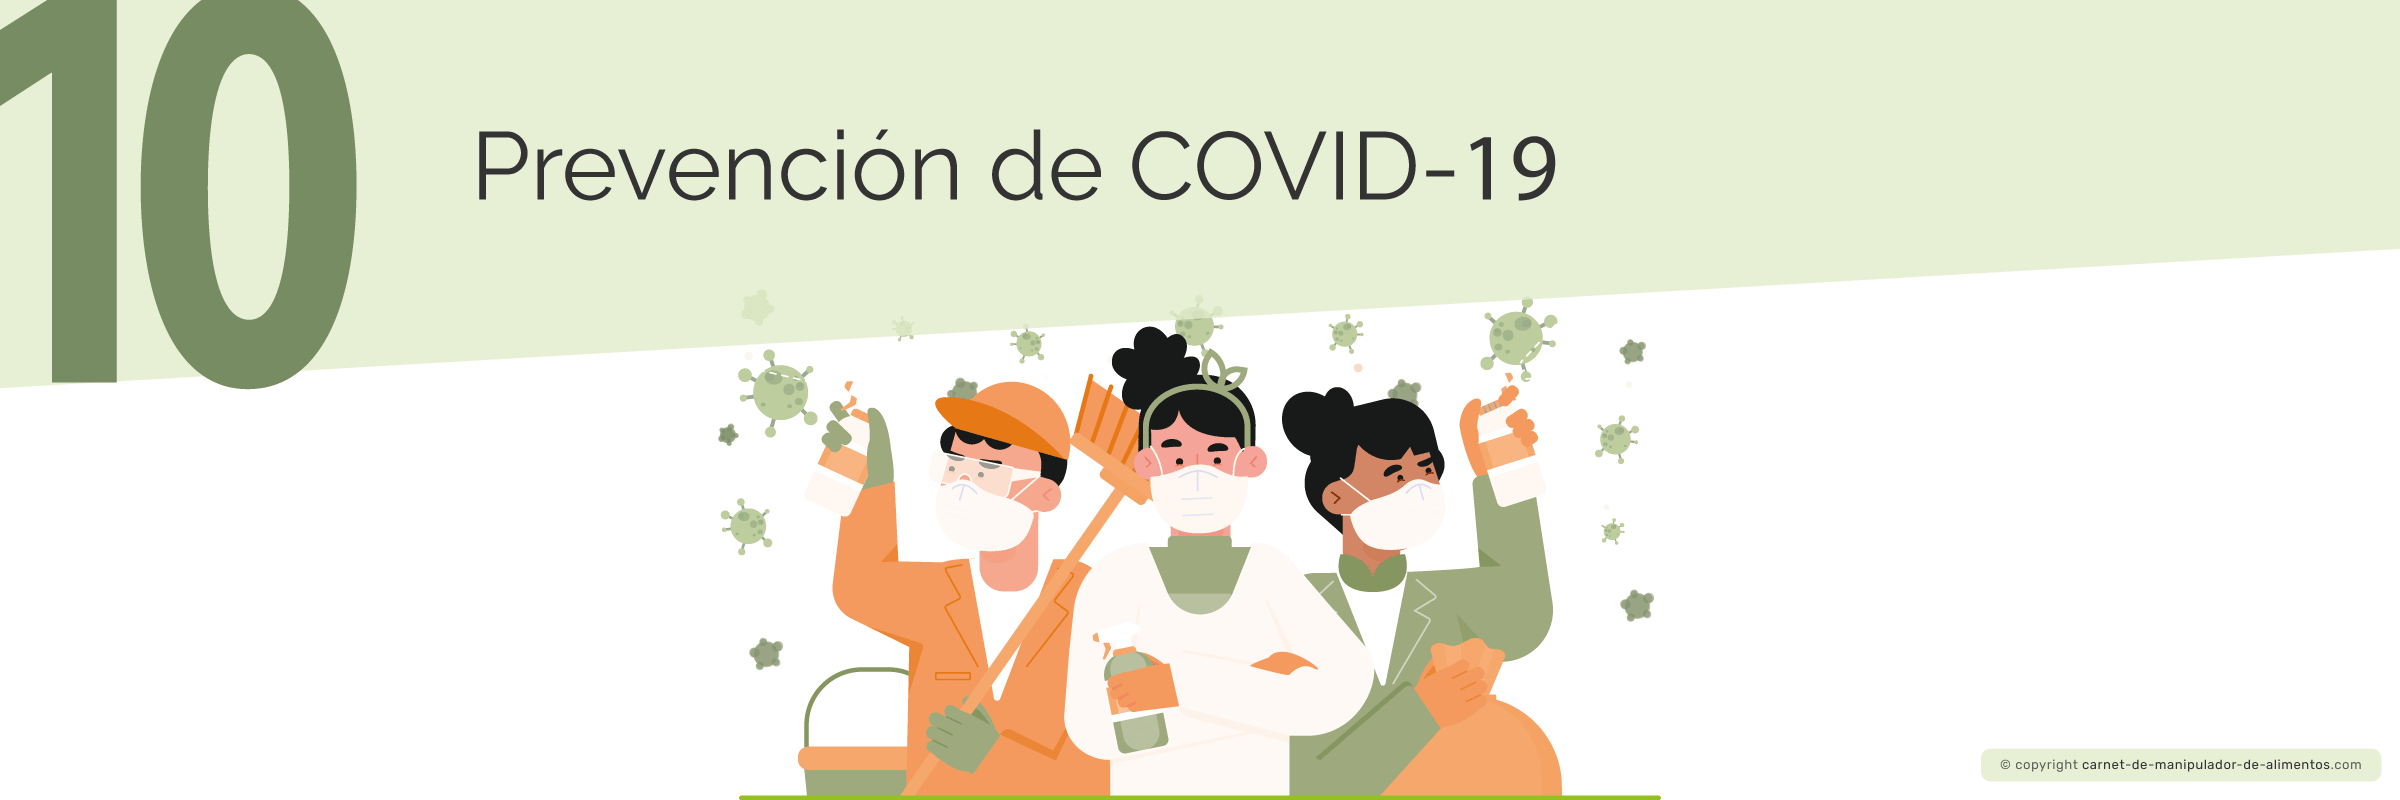 Prevención de COVID-19